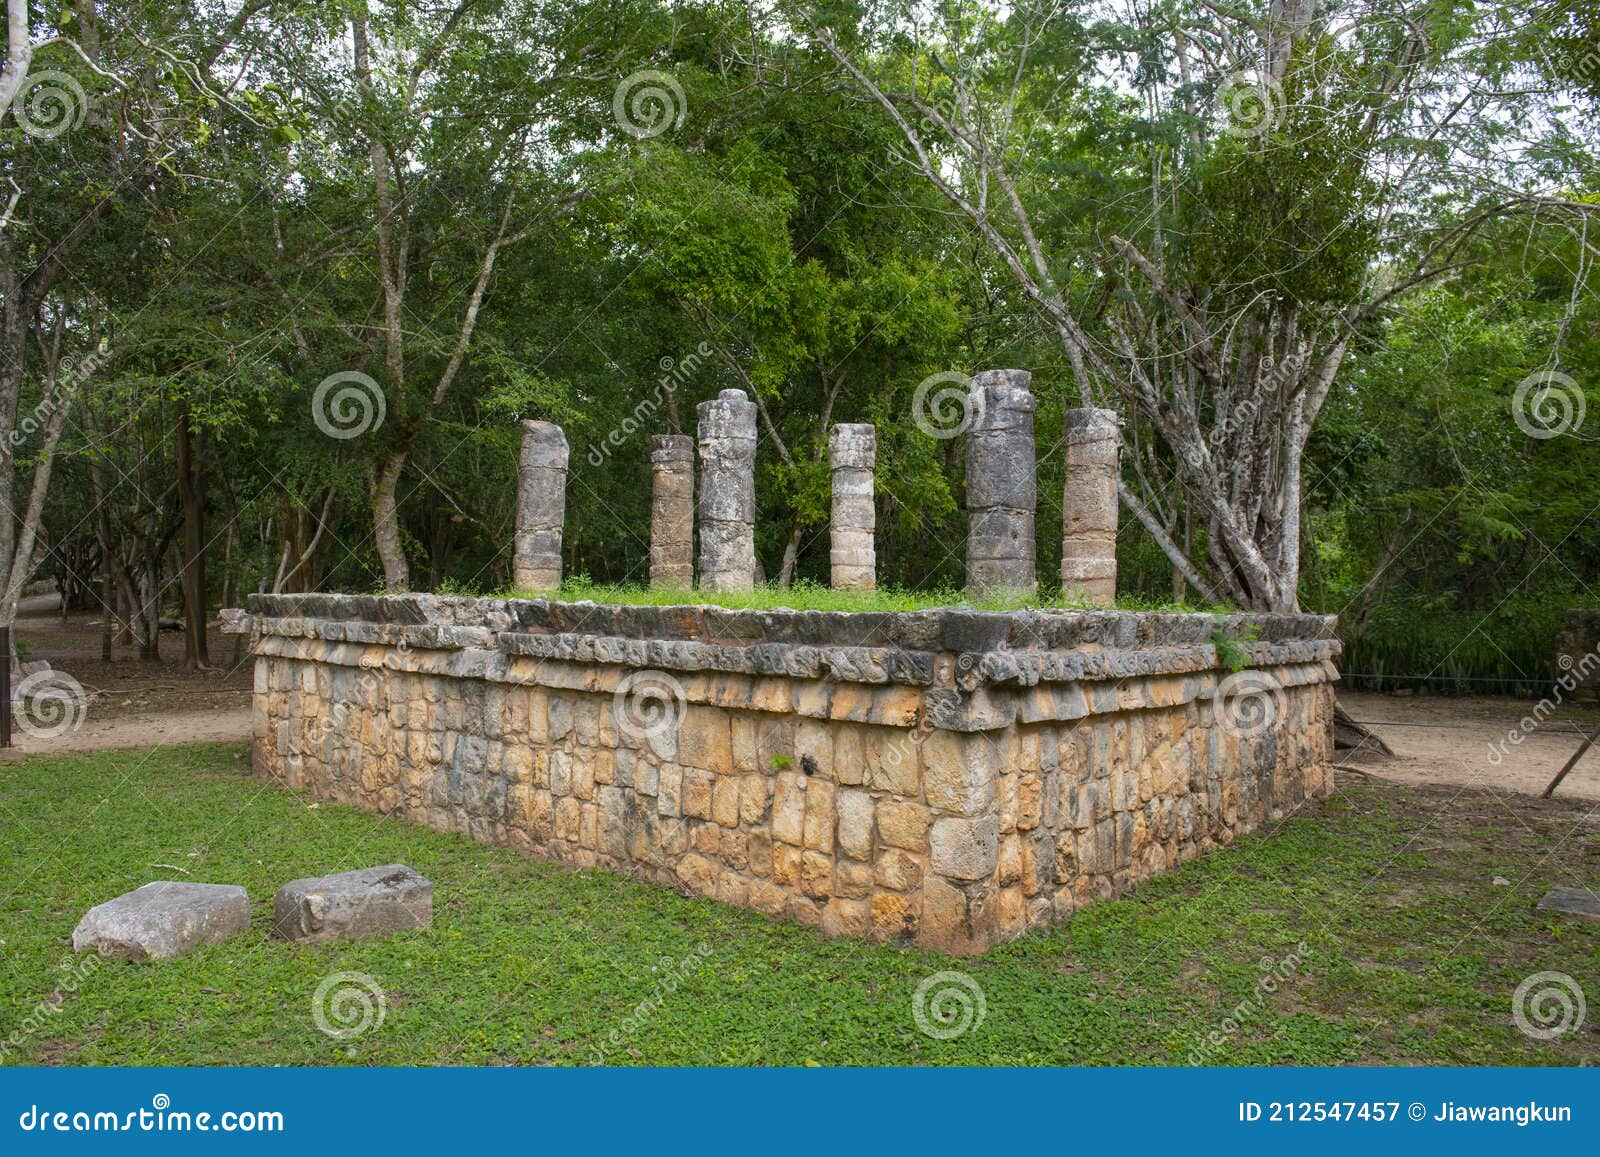 chichen itza archaeological site, yucatan, mexico